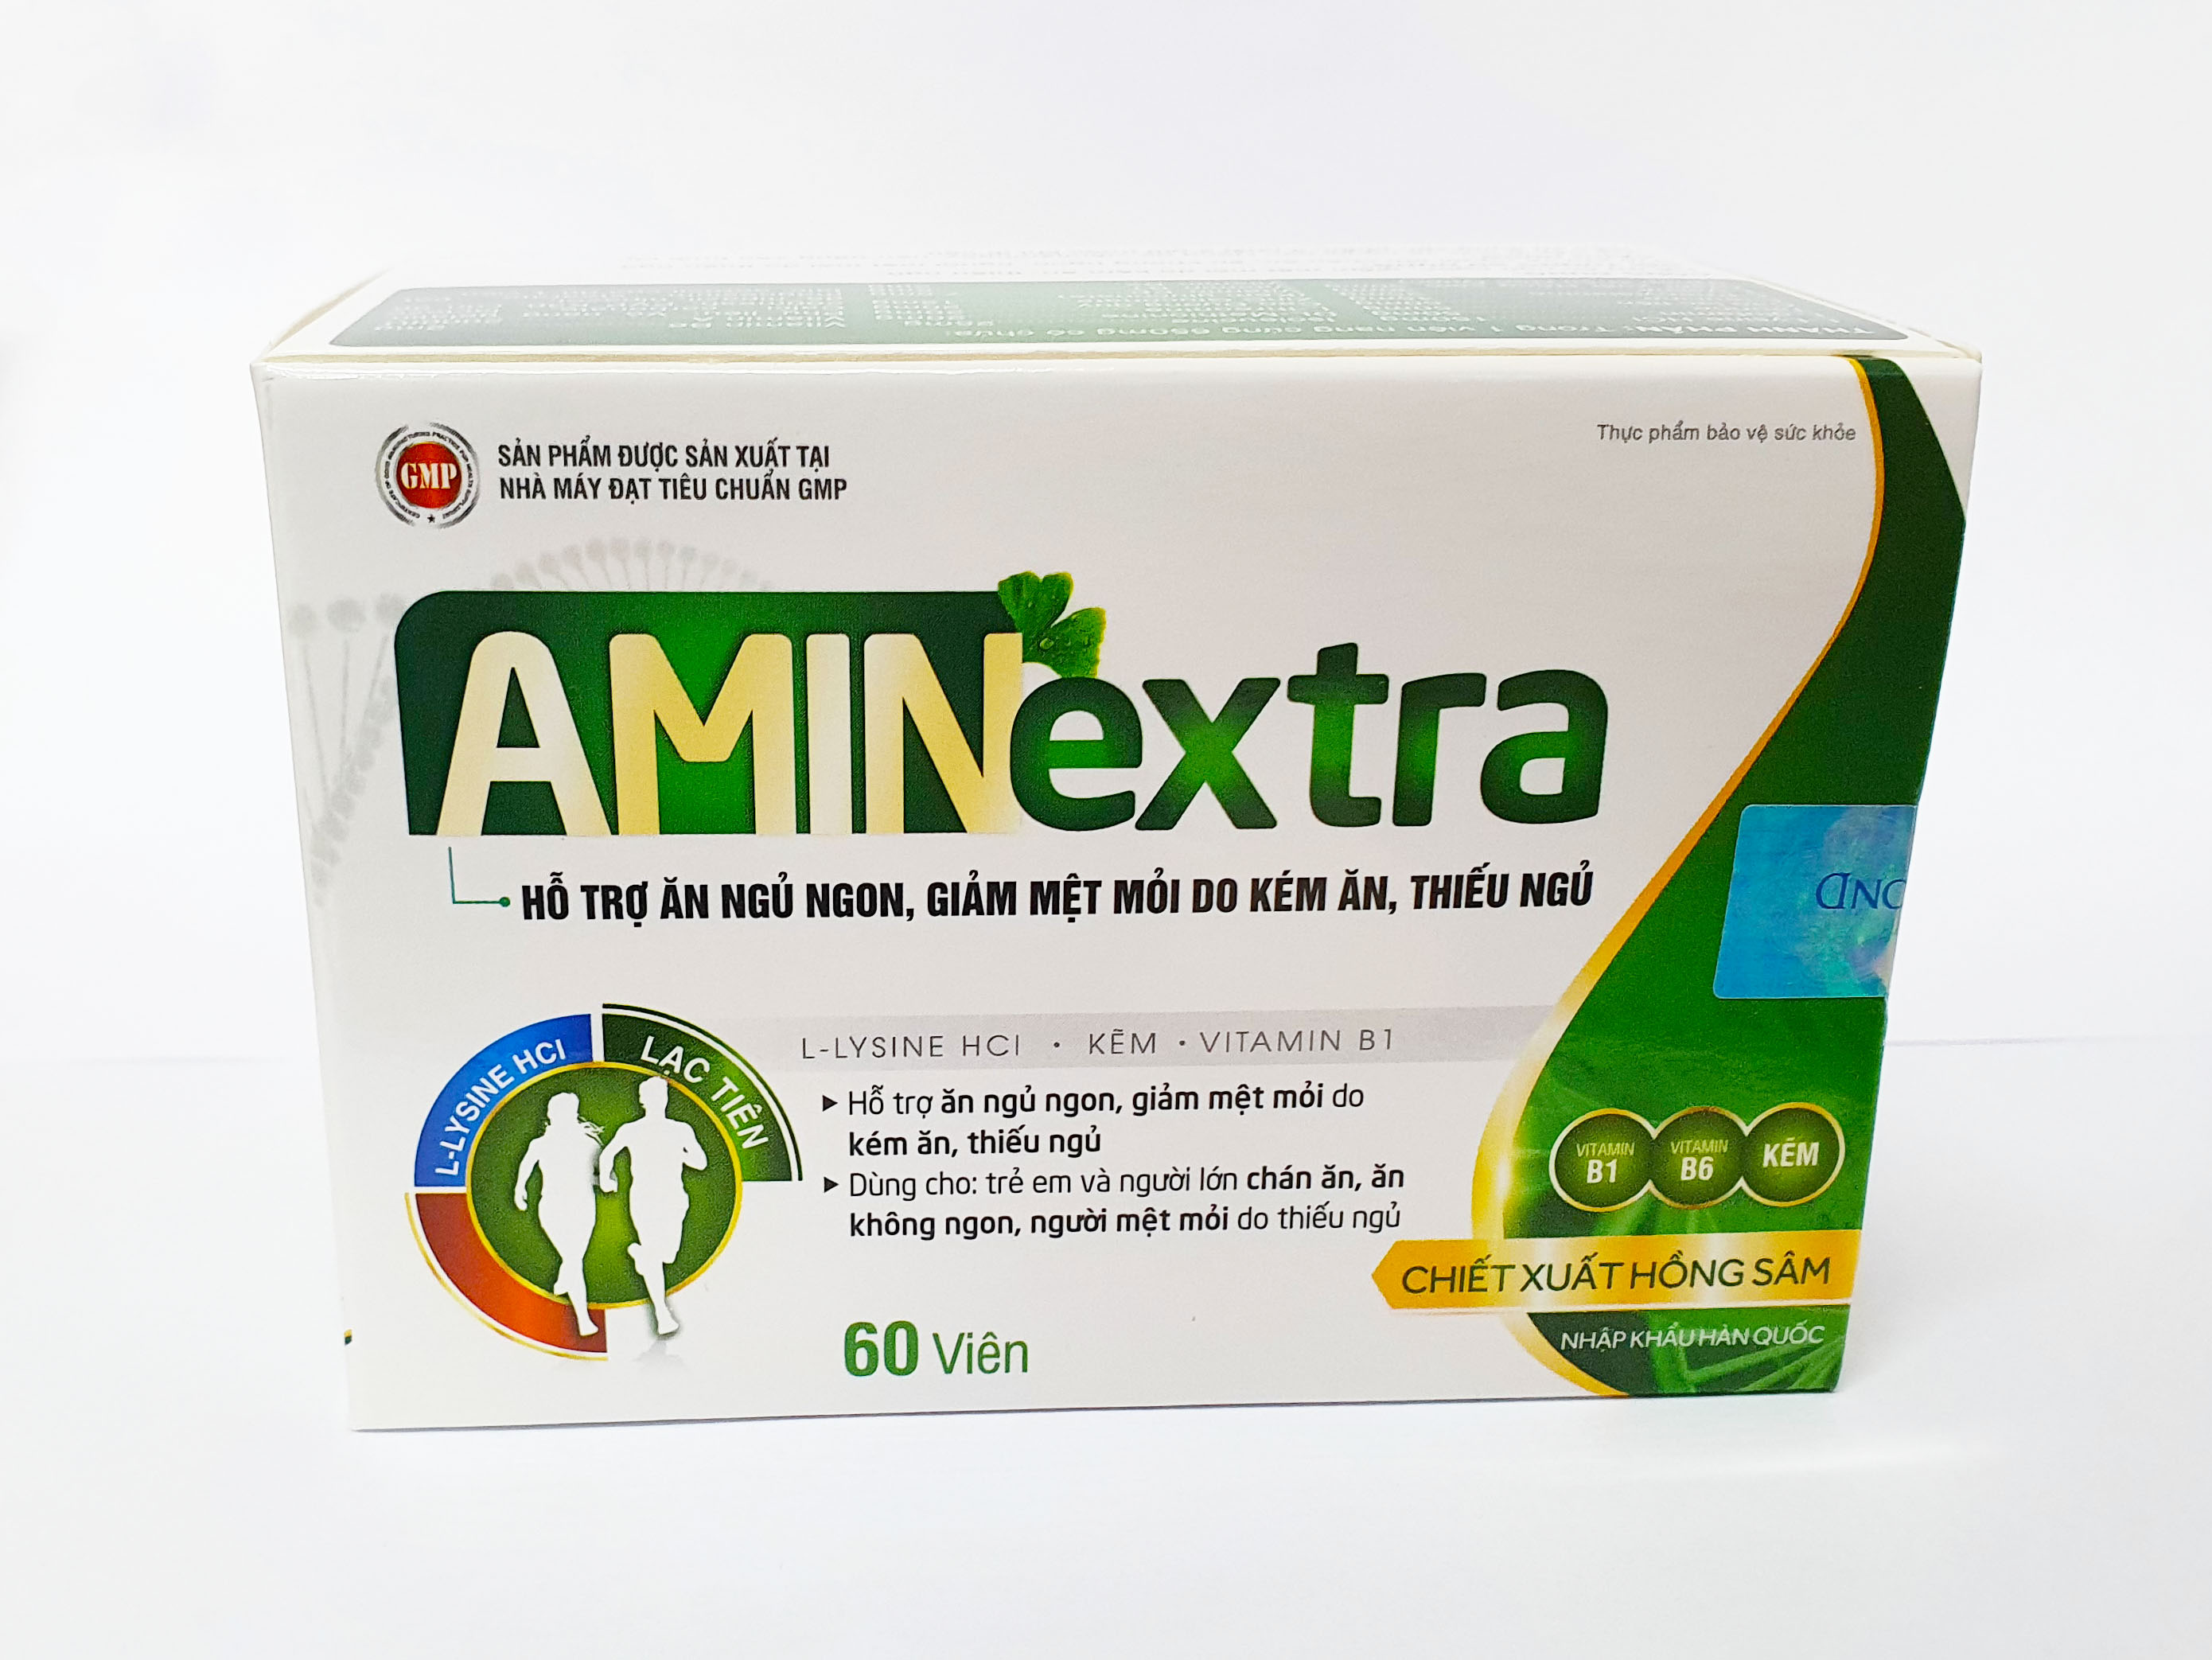 Thực Phẩm Bảo Vệ Sức Khỏe Aminextra (Hộp 60v) Hỗ Trợ Ăn Ngủ Ngon